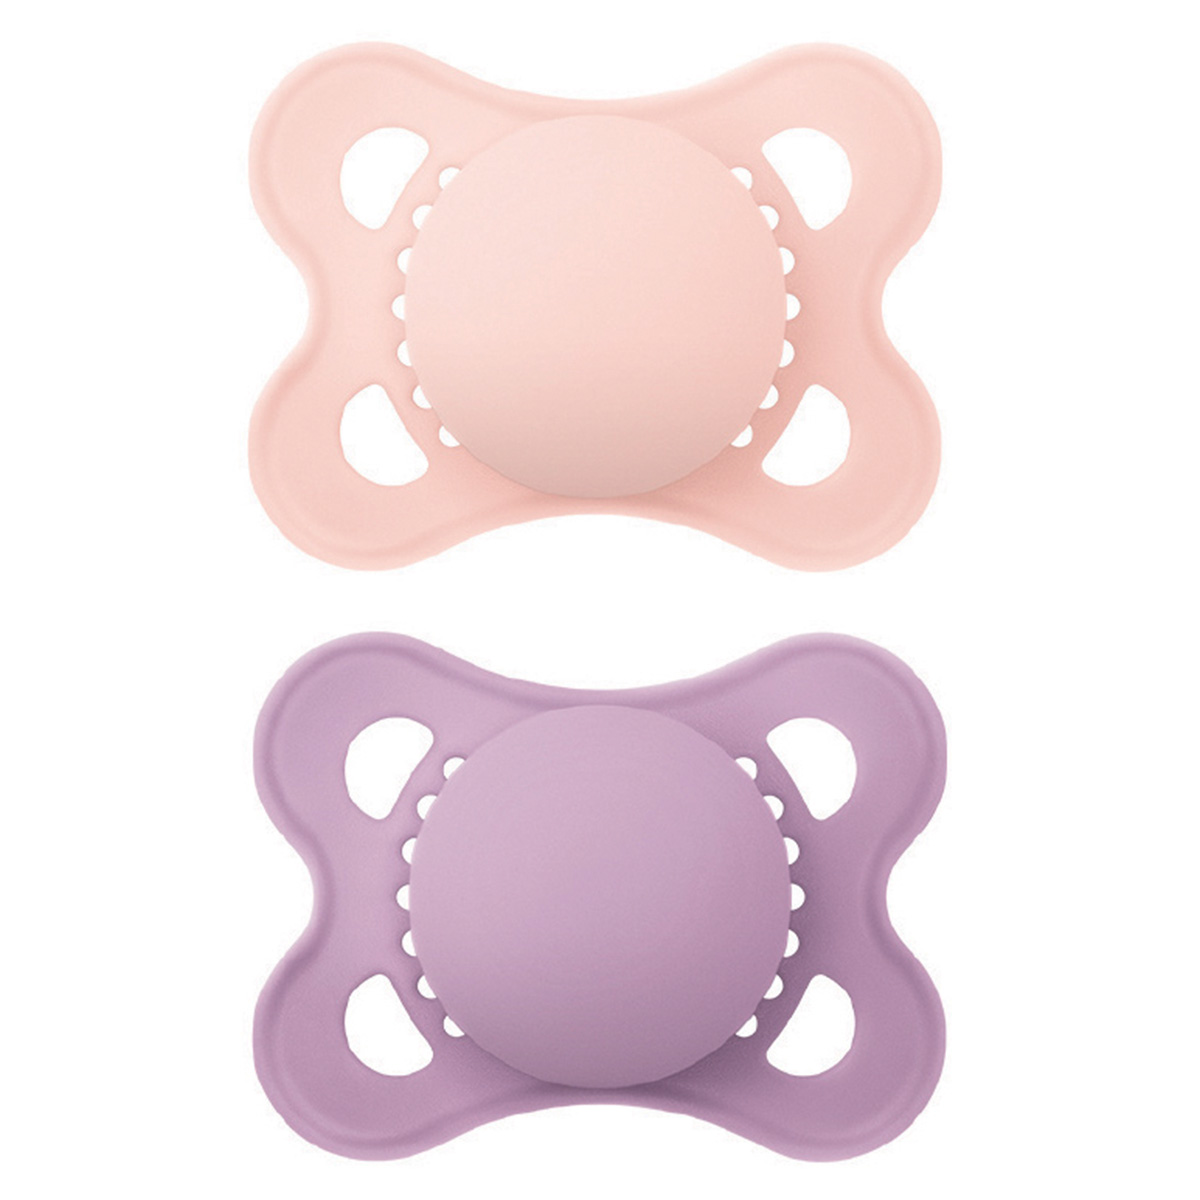 MAM Clip It, chaîne de sucette pour bébé compatible avec toutes les sucettes  MAM, essentiels pour nouveau-nés, rose (sucettes non incluses) -  Idyllemarket